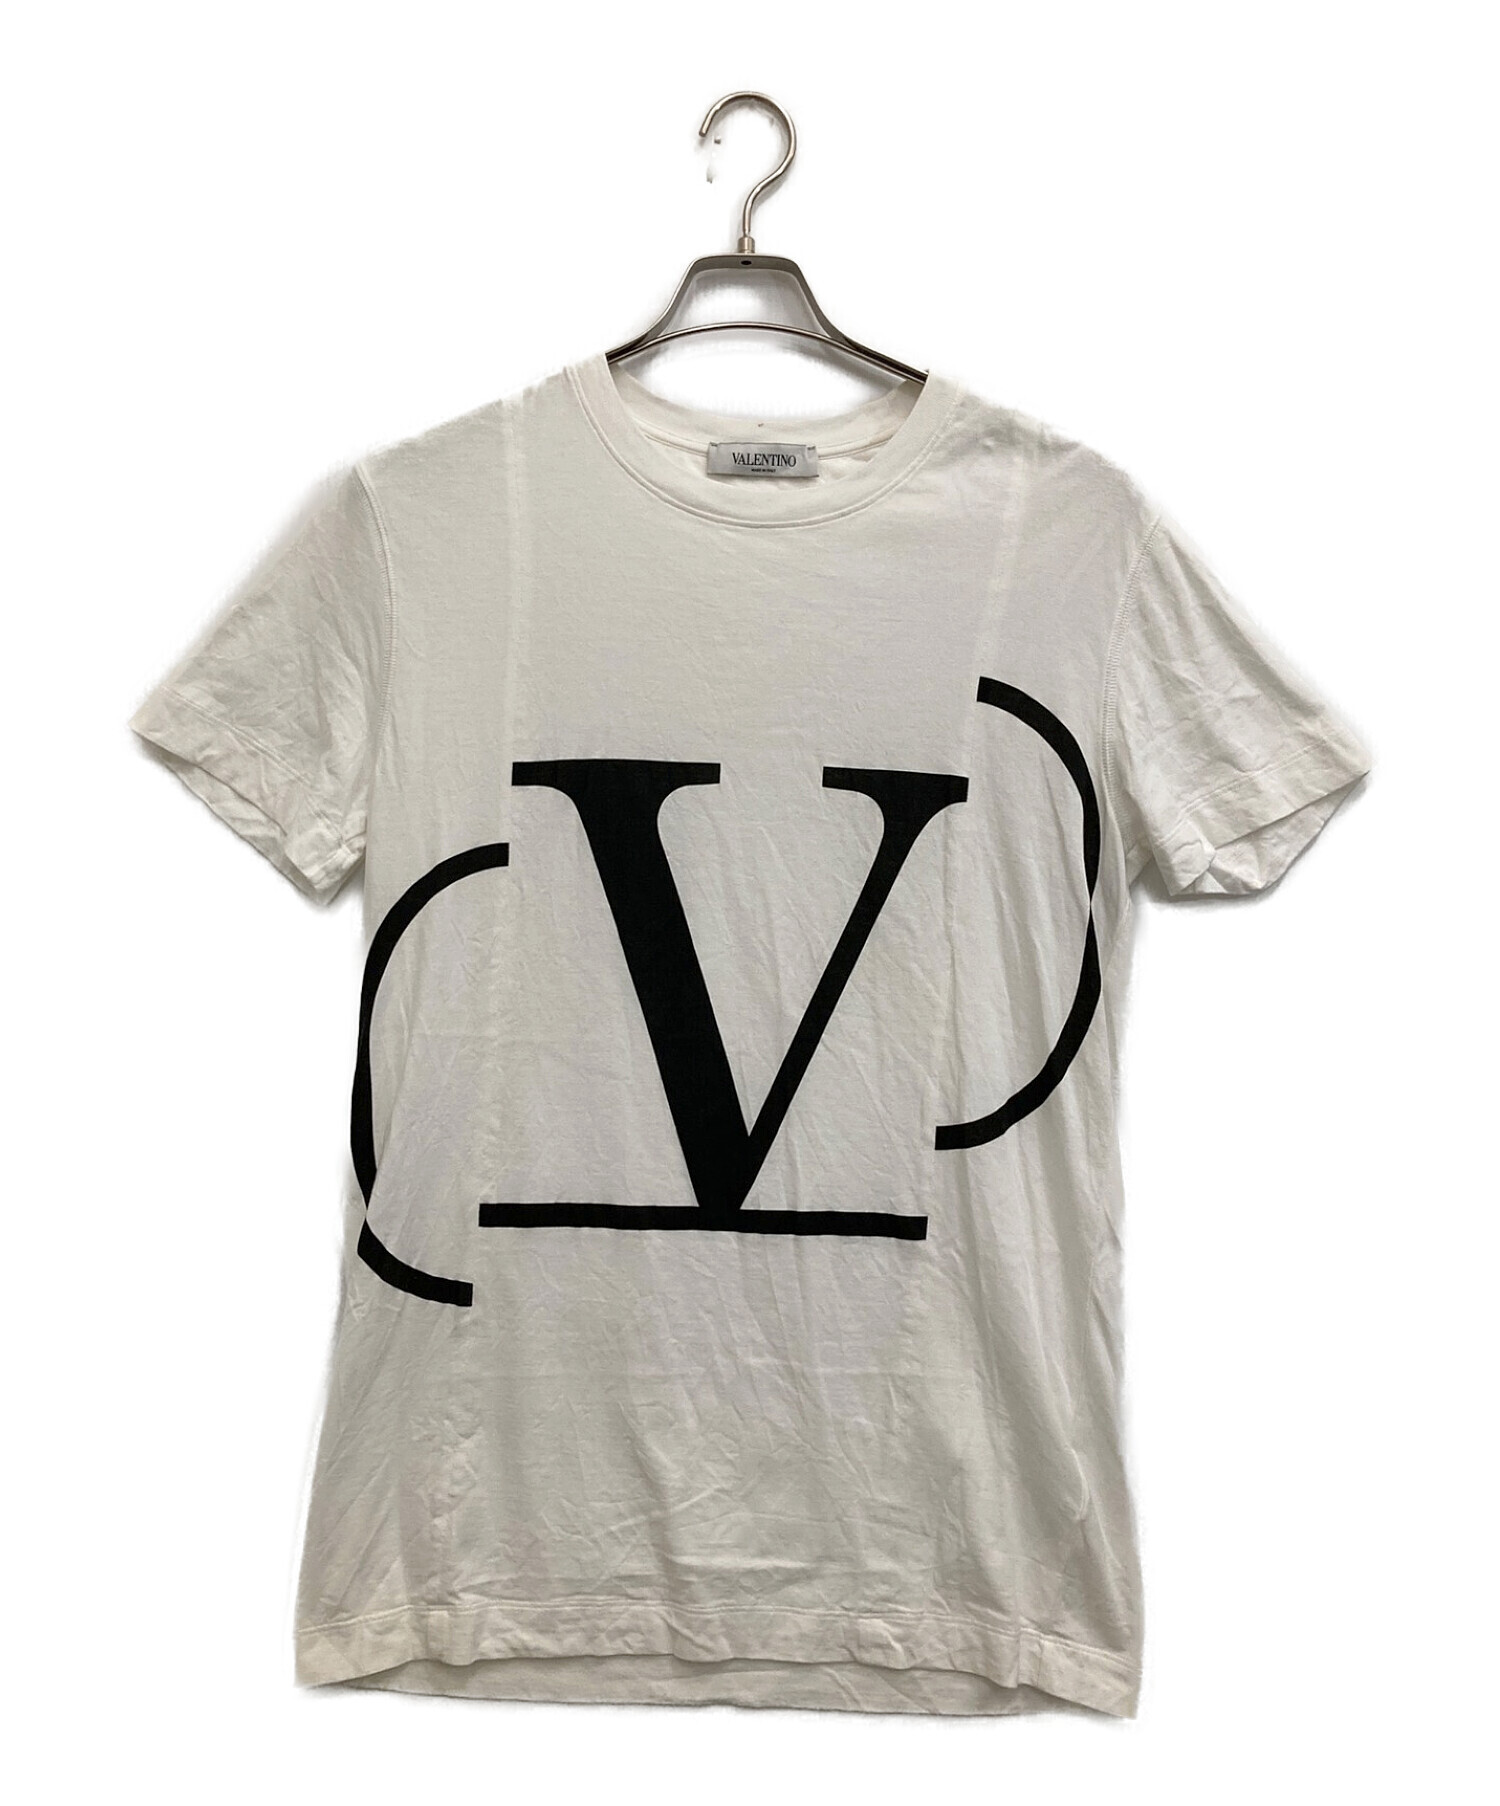 ヴァレンティノ Tシャツ気になる方はコメントください